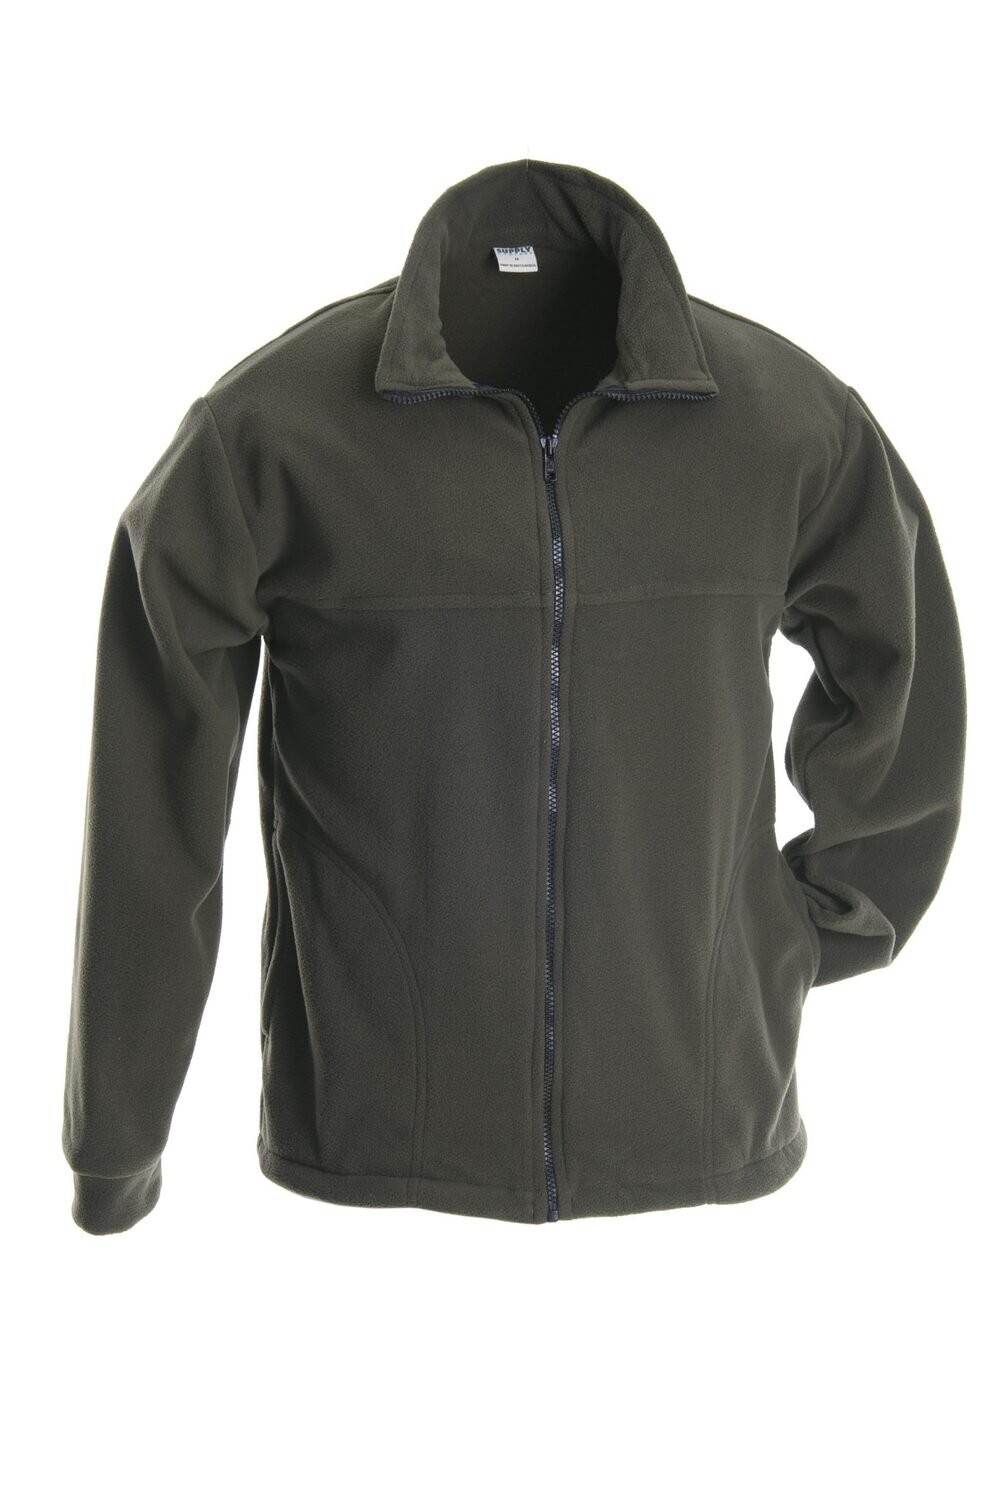 Ruggedwear Karoo Fleece Jacket